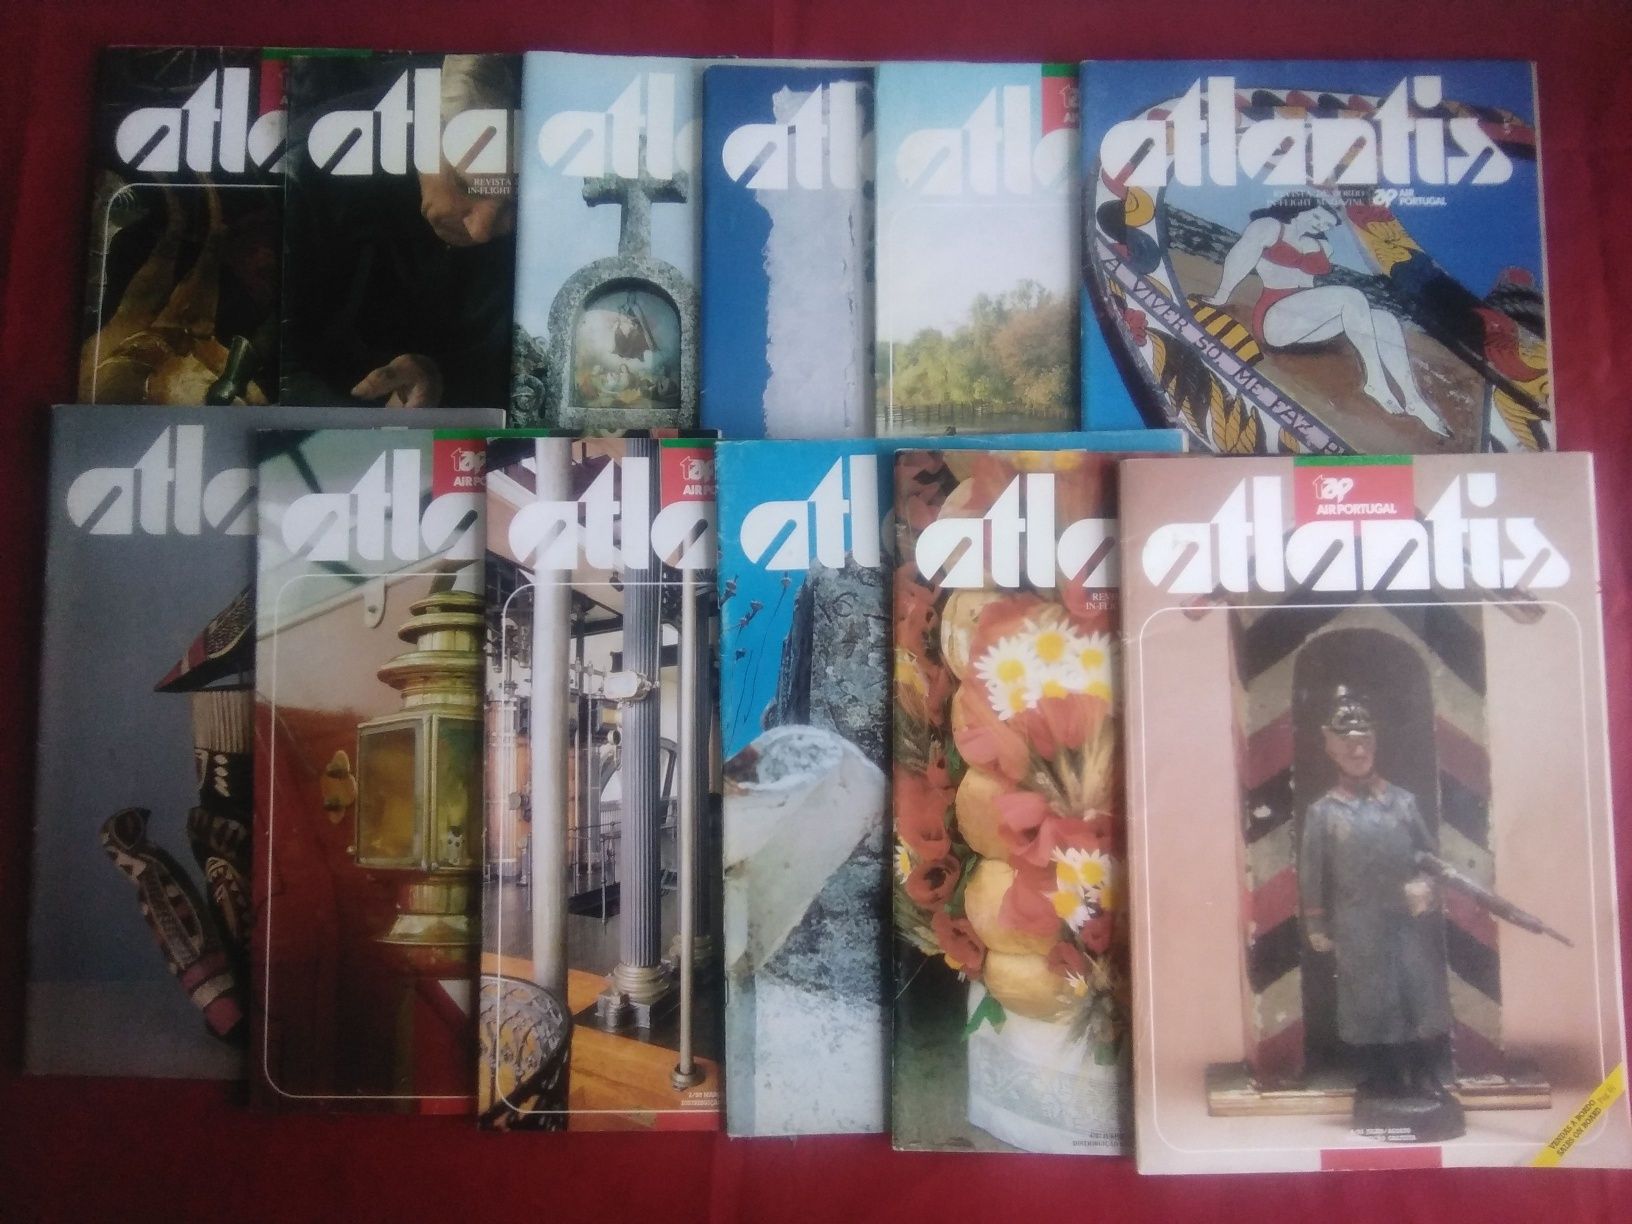 Lote de 12 revistas Atlantis antigas de TAP Air Portugal.